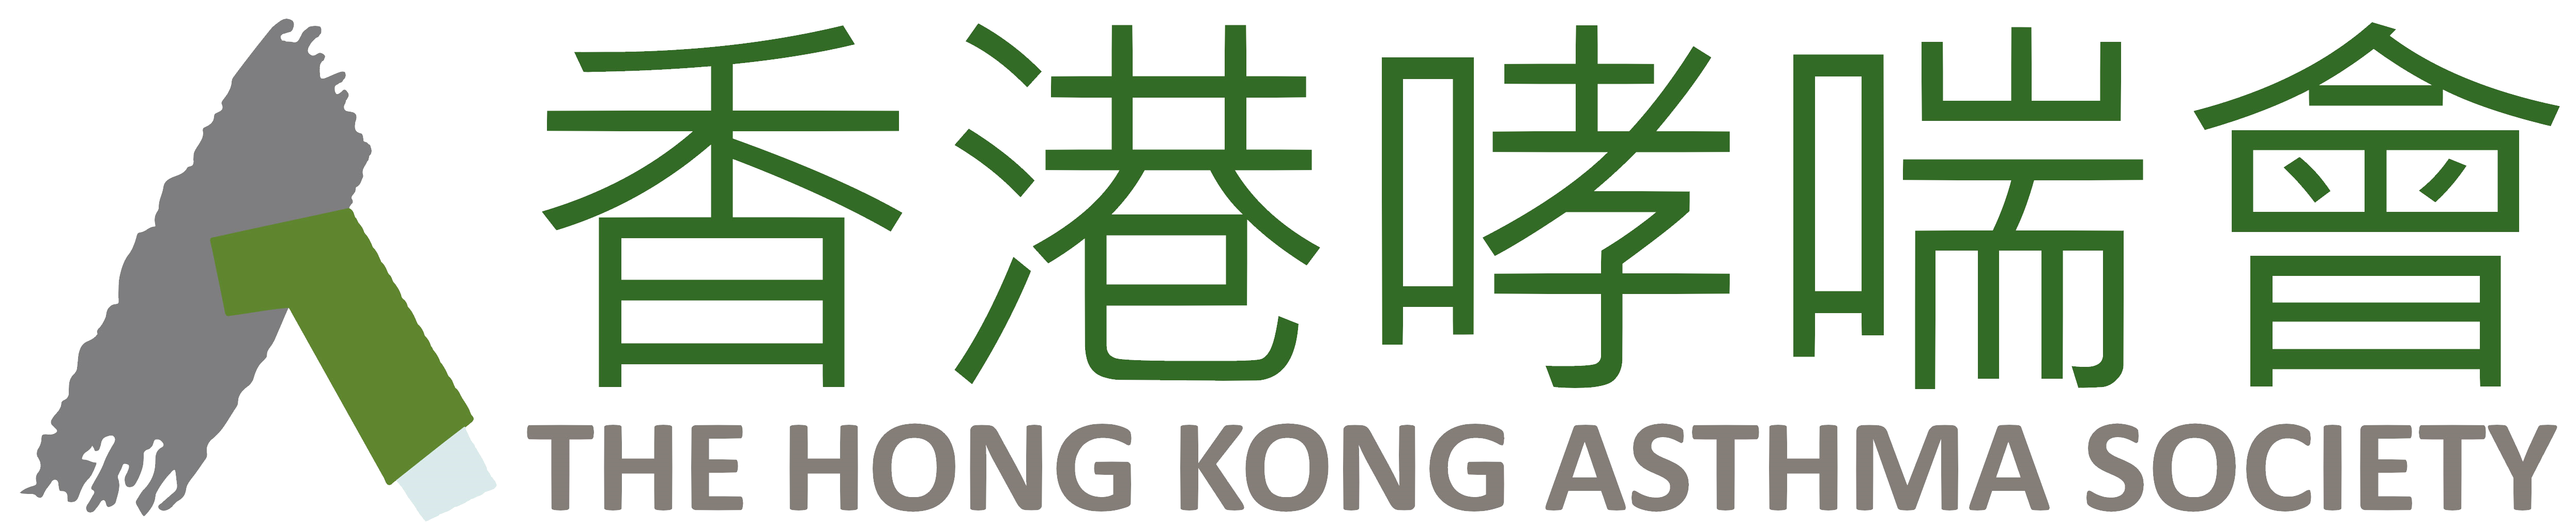 The Hong Kong Asthma Society 香港哮喘會